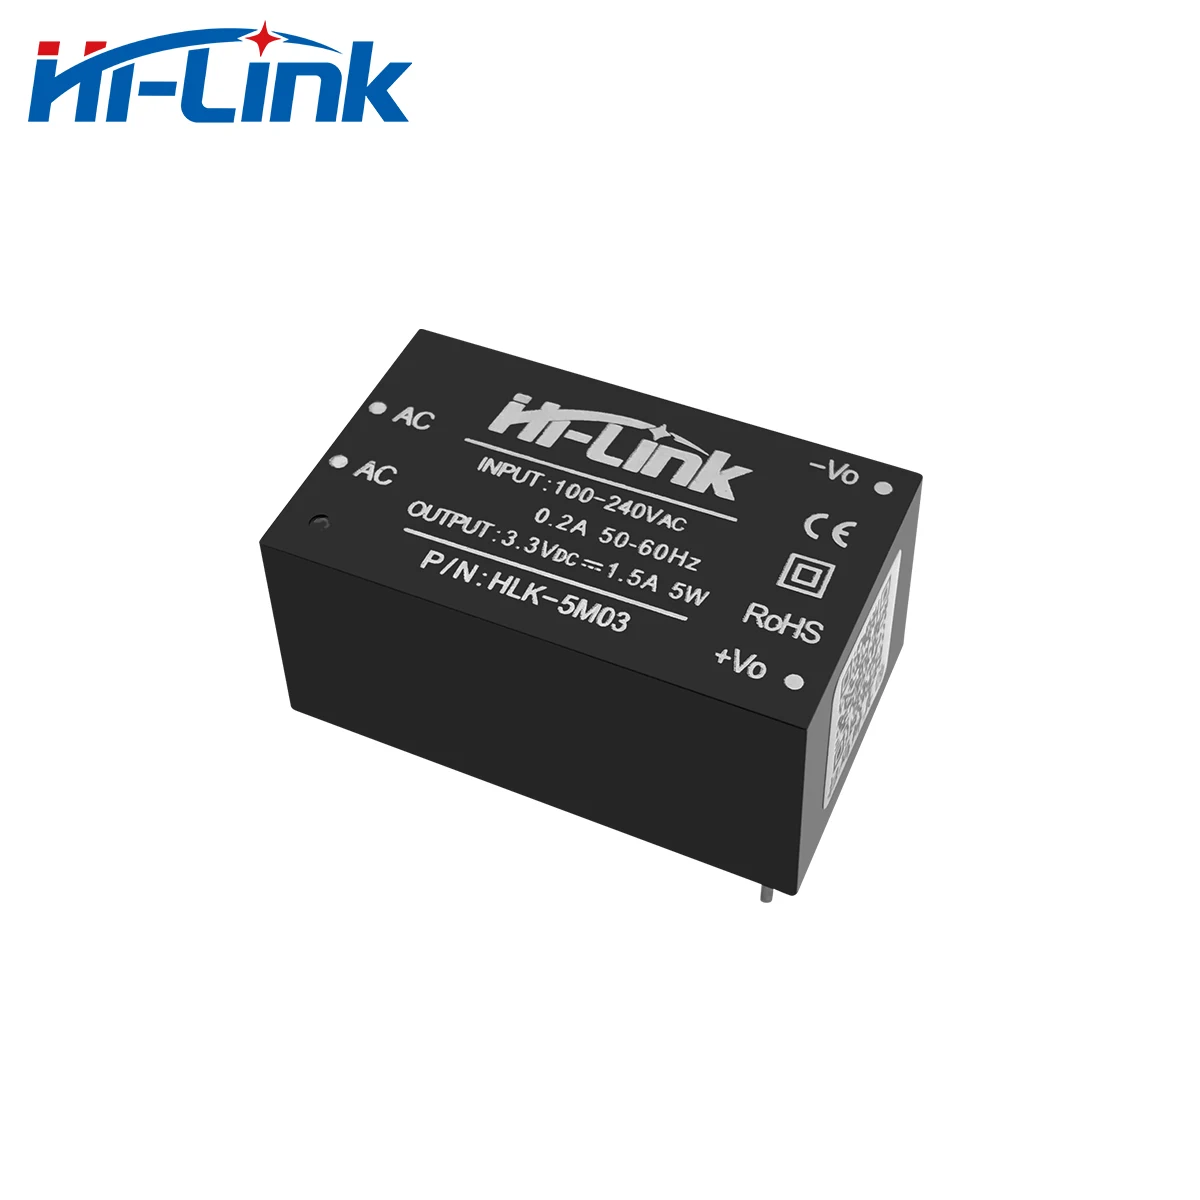 Hi-Link oryginalny HLK-5M03 źródłowy moduł zasilania 5W 3.3V 220V 110V AC DC